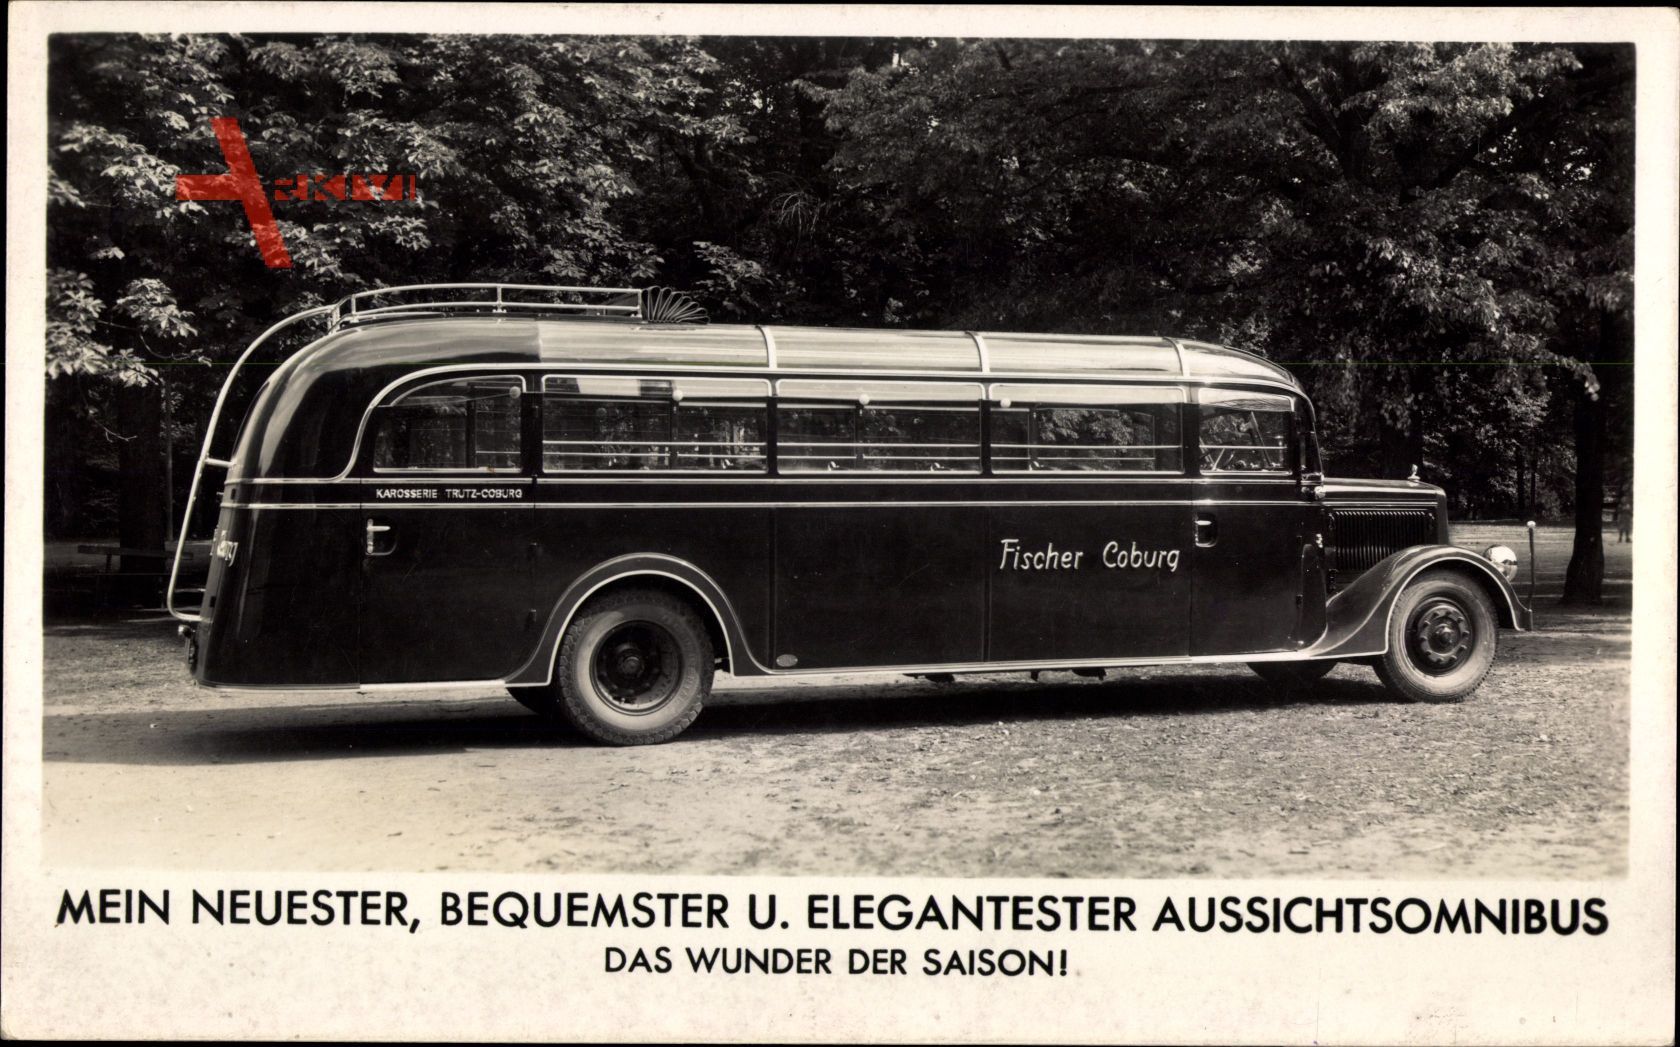 Omnibus Fischer, Coburg, Aussichtsomnibus, Karosserie Trutz